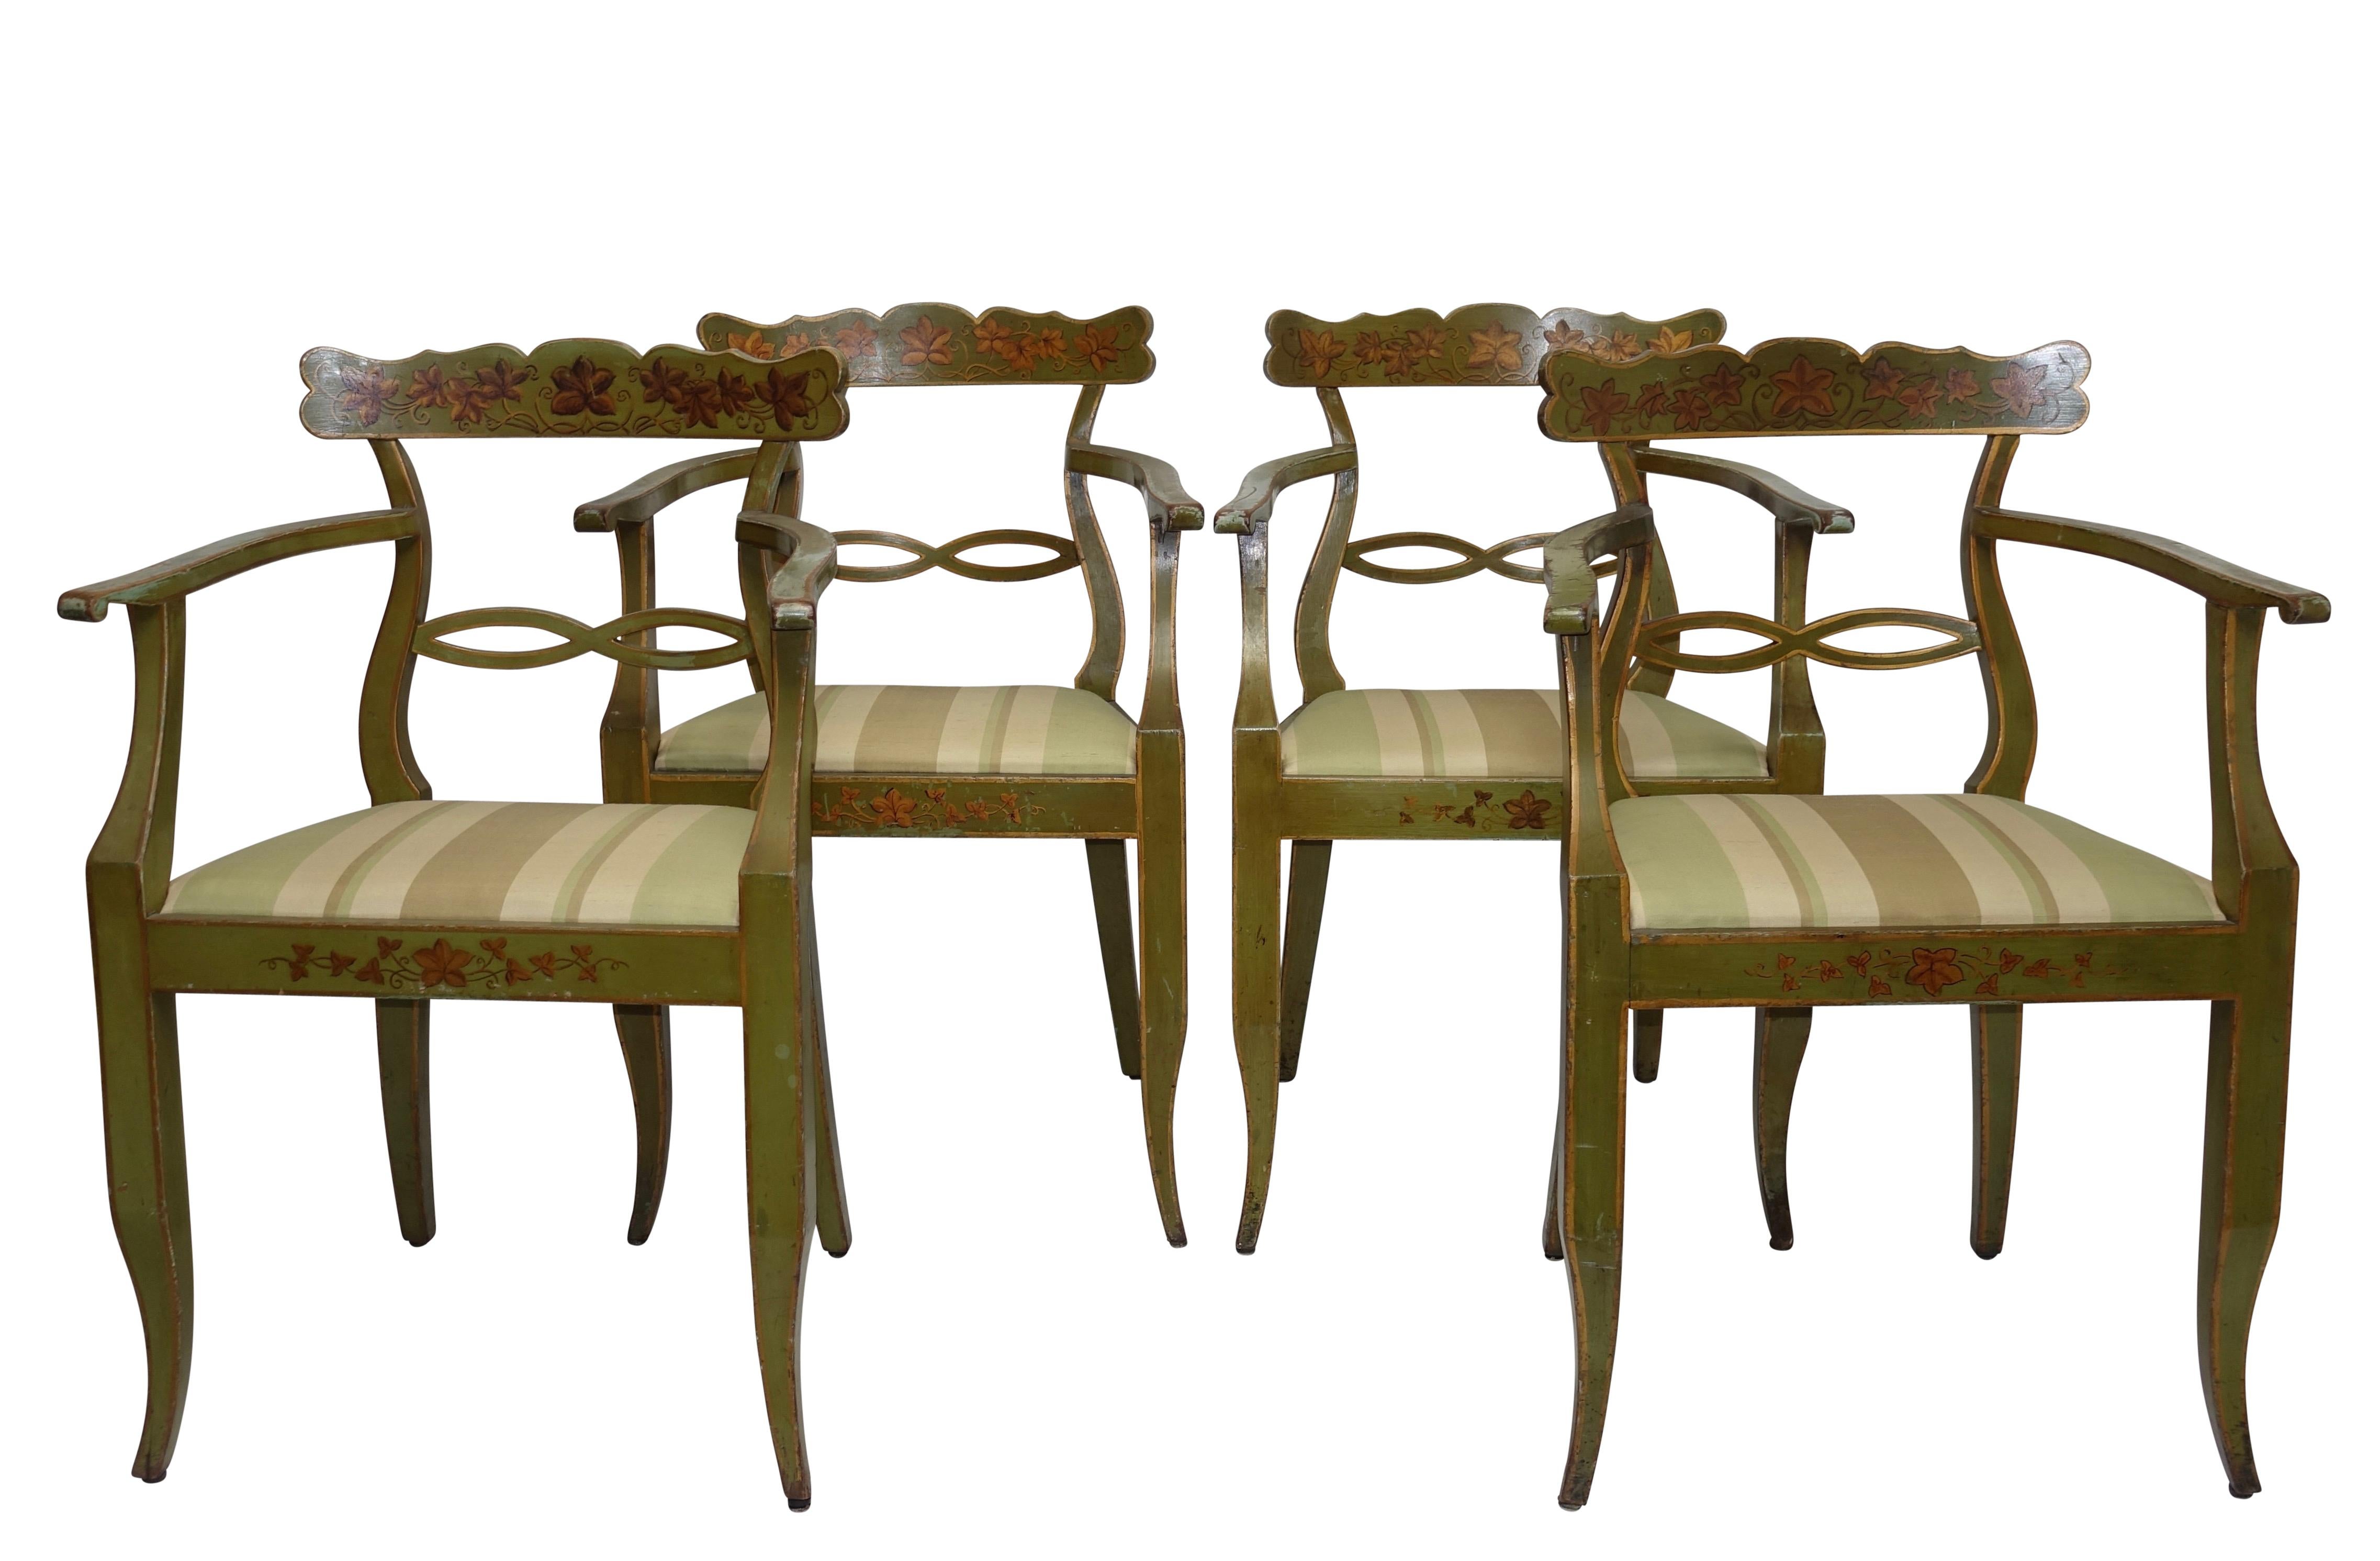 Un ensemble de quatre fauteuils peints en vert avec des accents dorés et du lierre en vigne sur la barre arrière et le tablier avant. Les sièges ont été récemment recouverts d'un tissu à rayures en soie verte. Europe du Nord, 19e siècle.
Usure